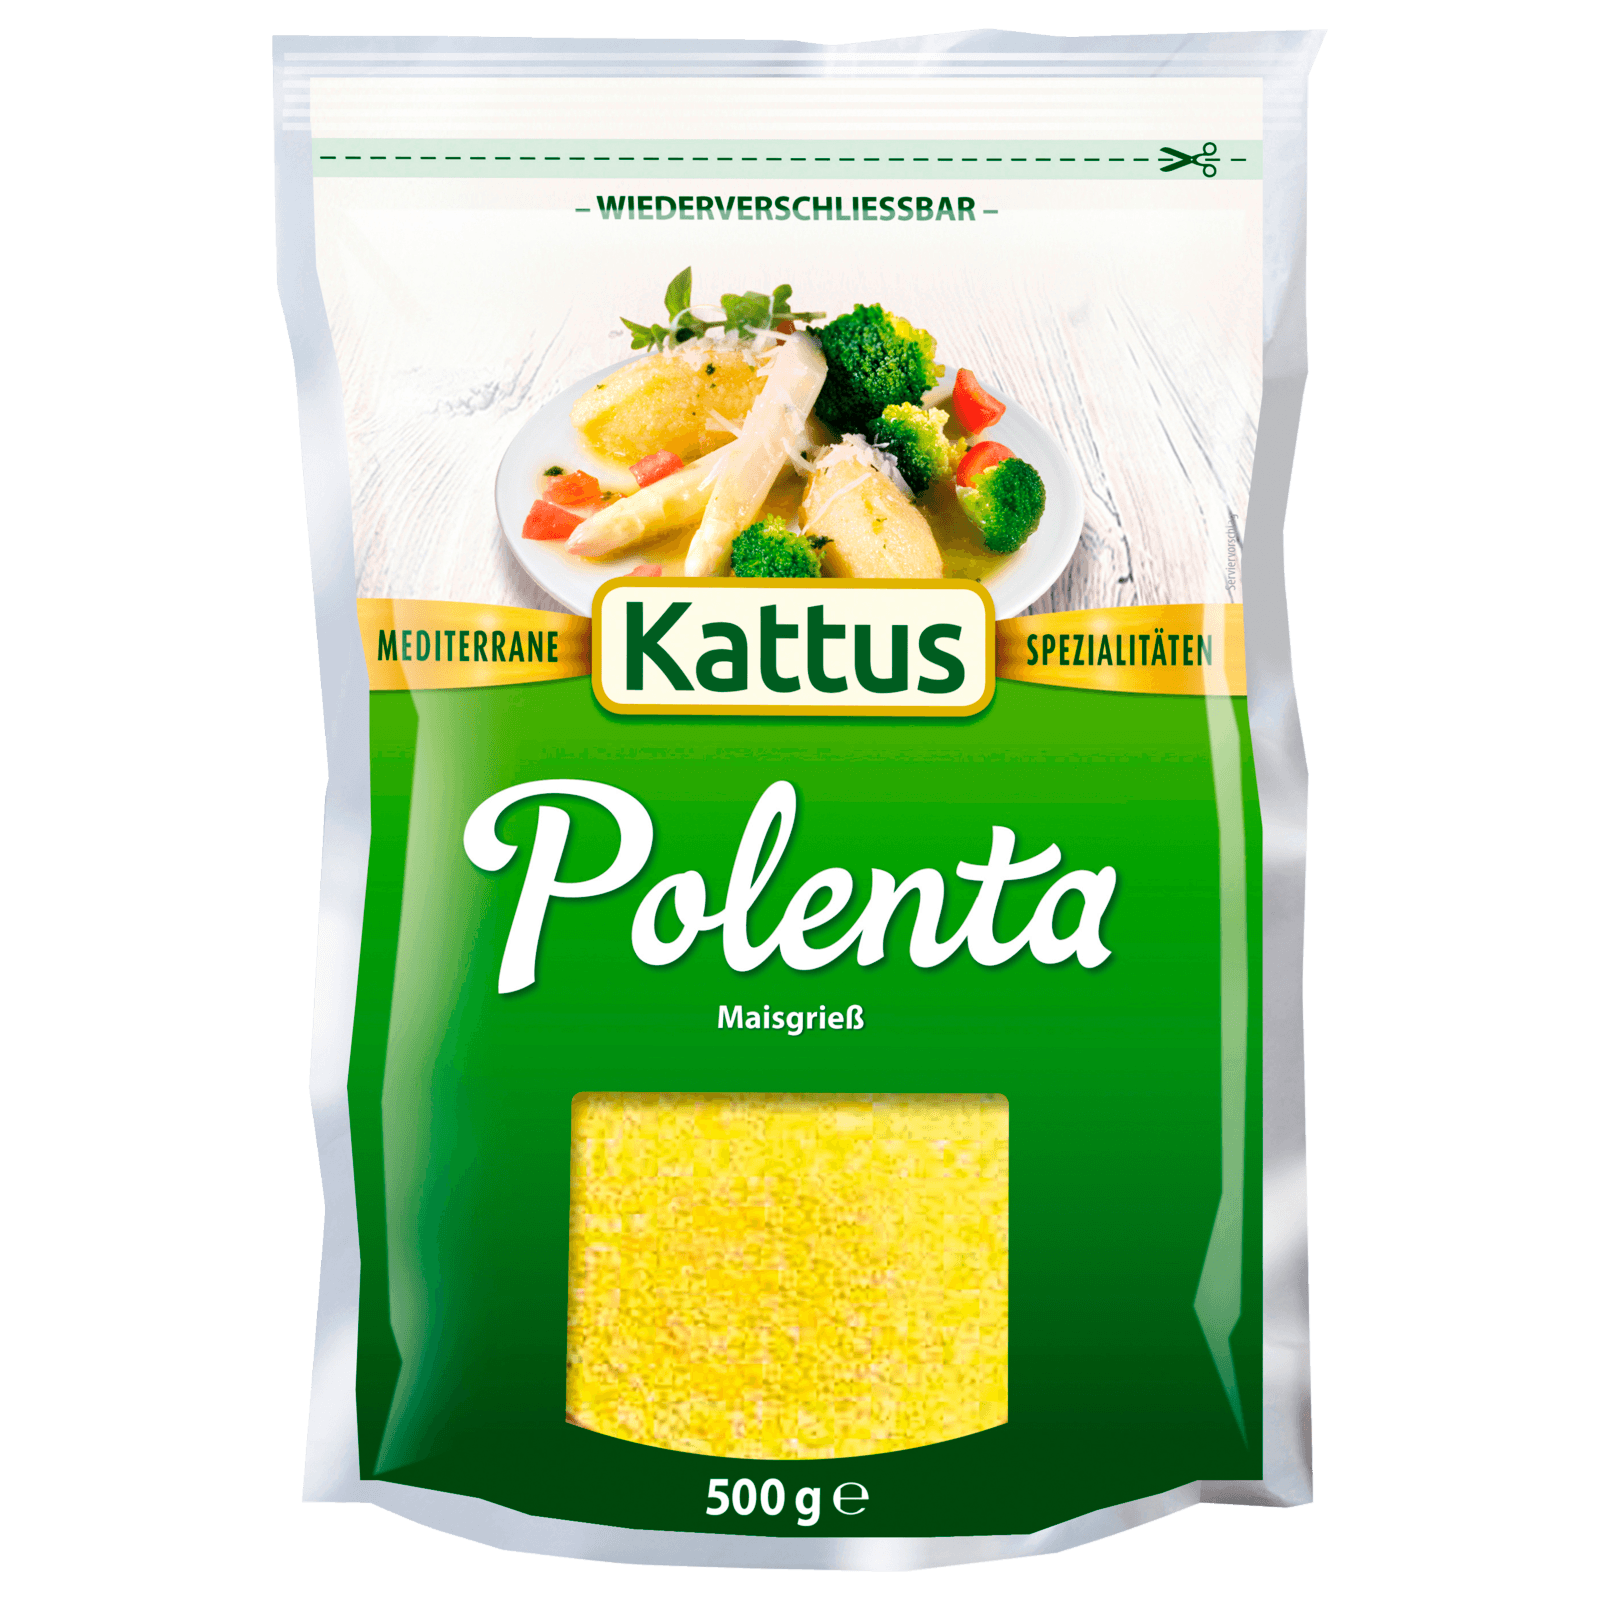 Kattus Polenta 500g  für 2.79 EUR